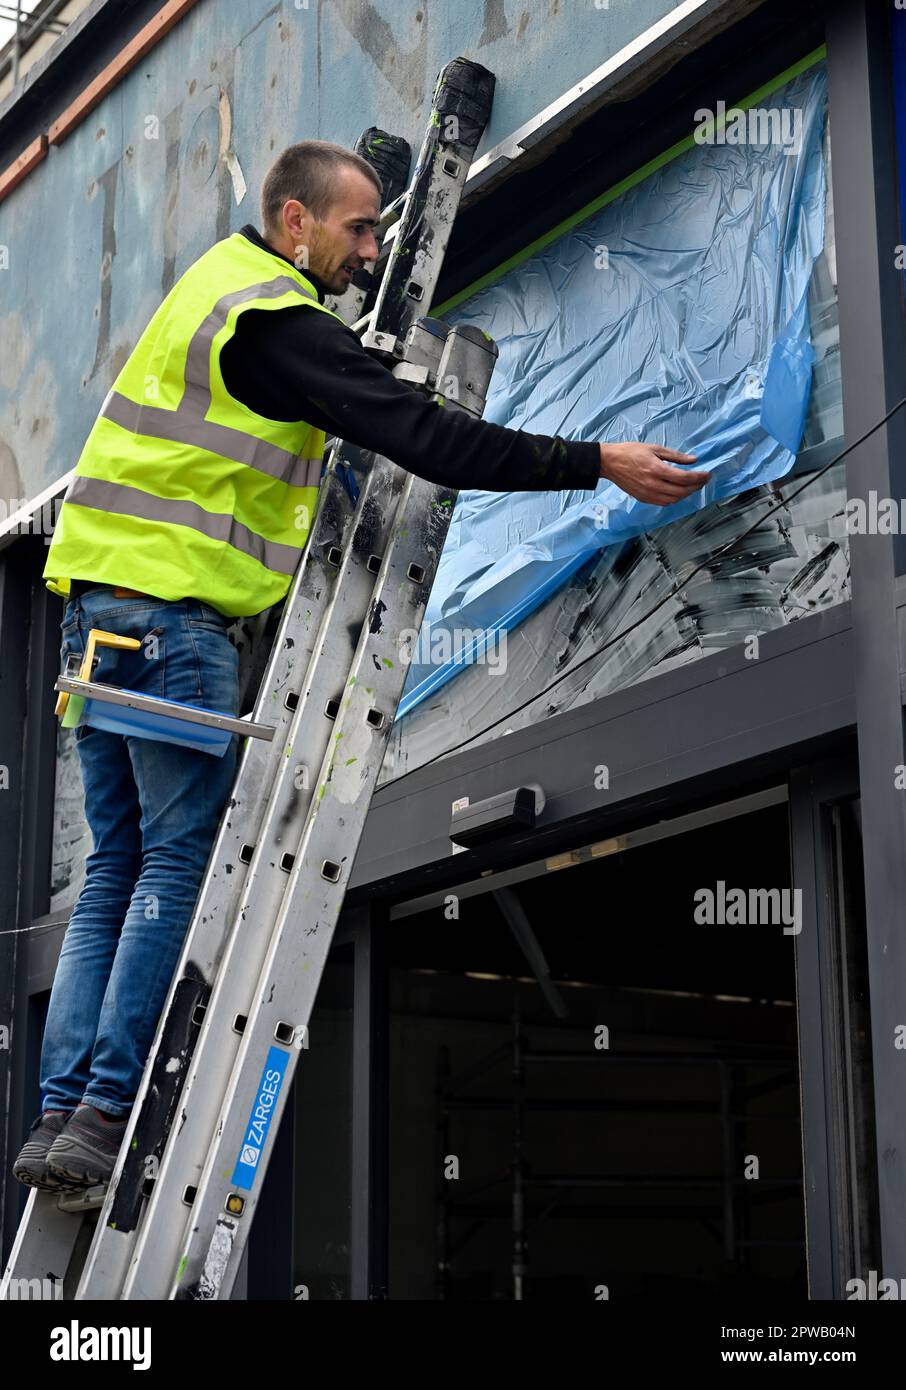 Workman sur l'échelle installer une feuille de masquage de protection en plastique sur la fenêtre en verre de l'atelier en vue de la peinture par pulvérisation Banque D'Images